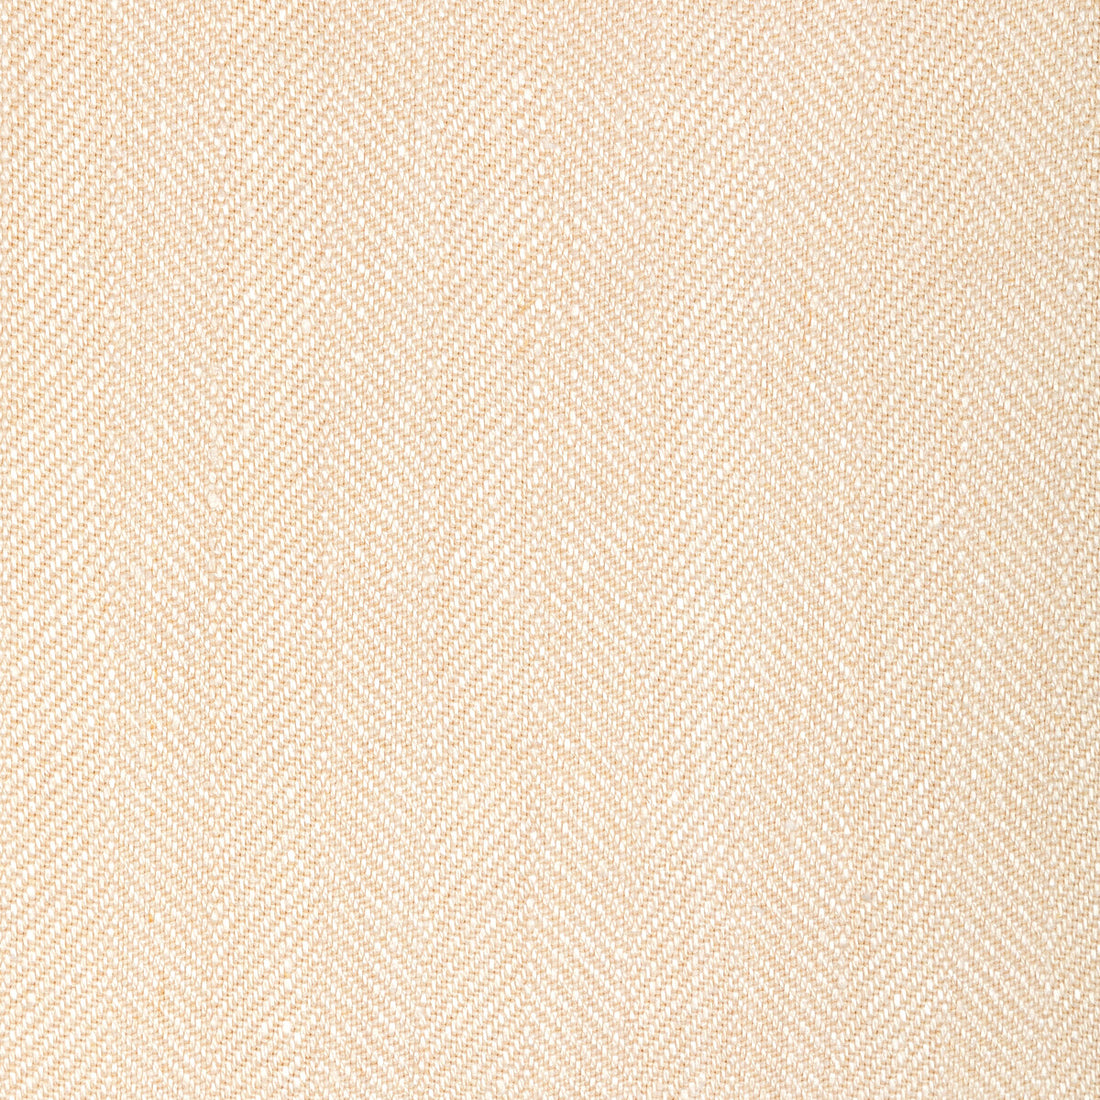 Kravet Basics fabric in 36343-106 color - pattern 36343.106.0 - by Kravet Basics